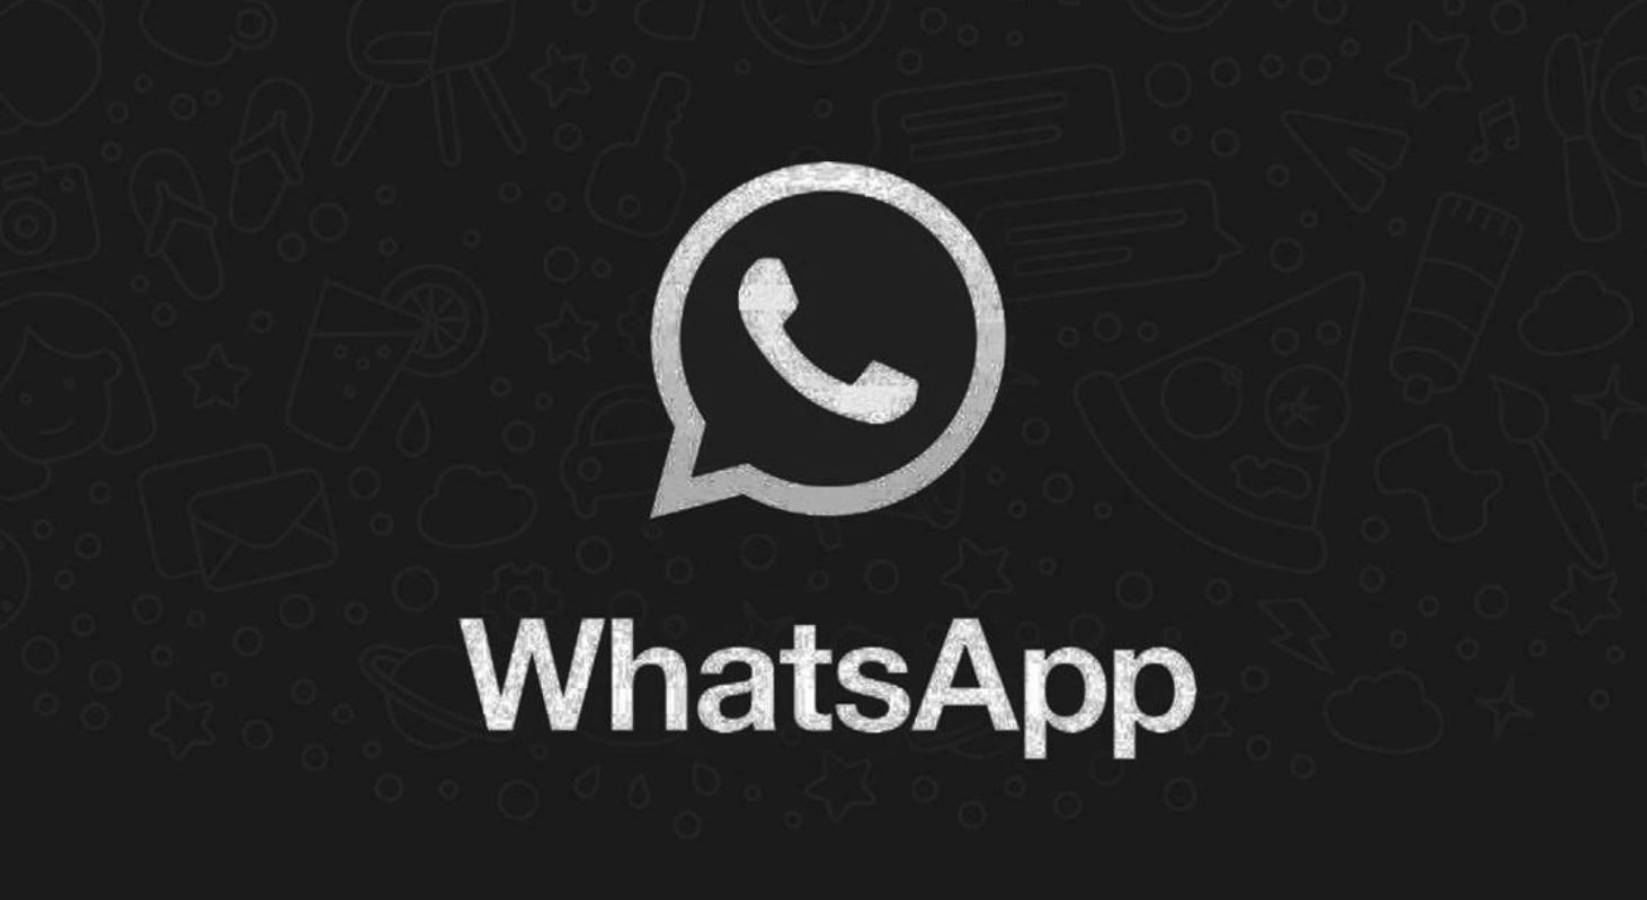 WhatsApp-verkko tumma tila